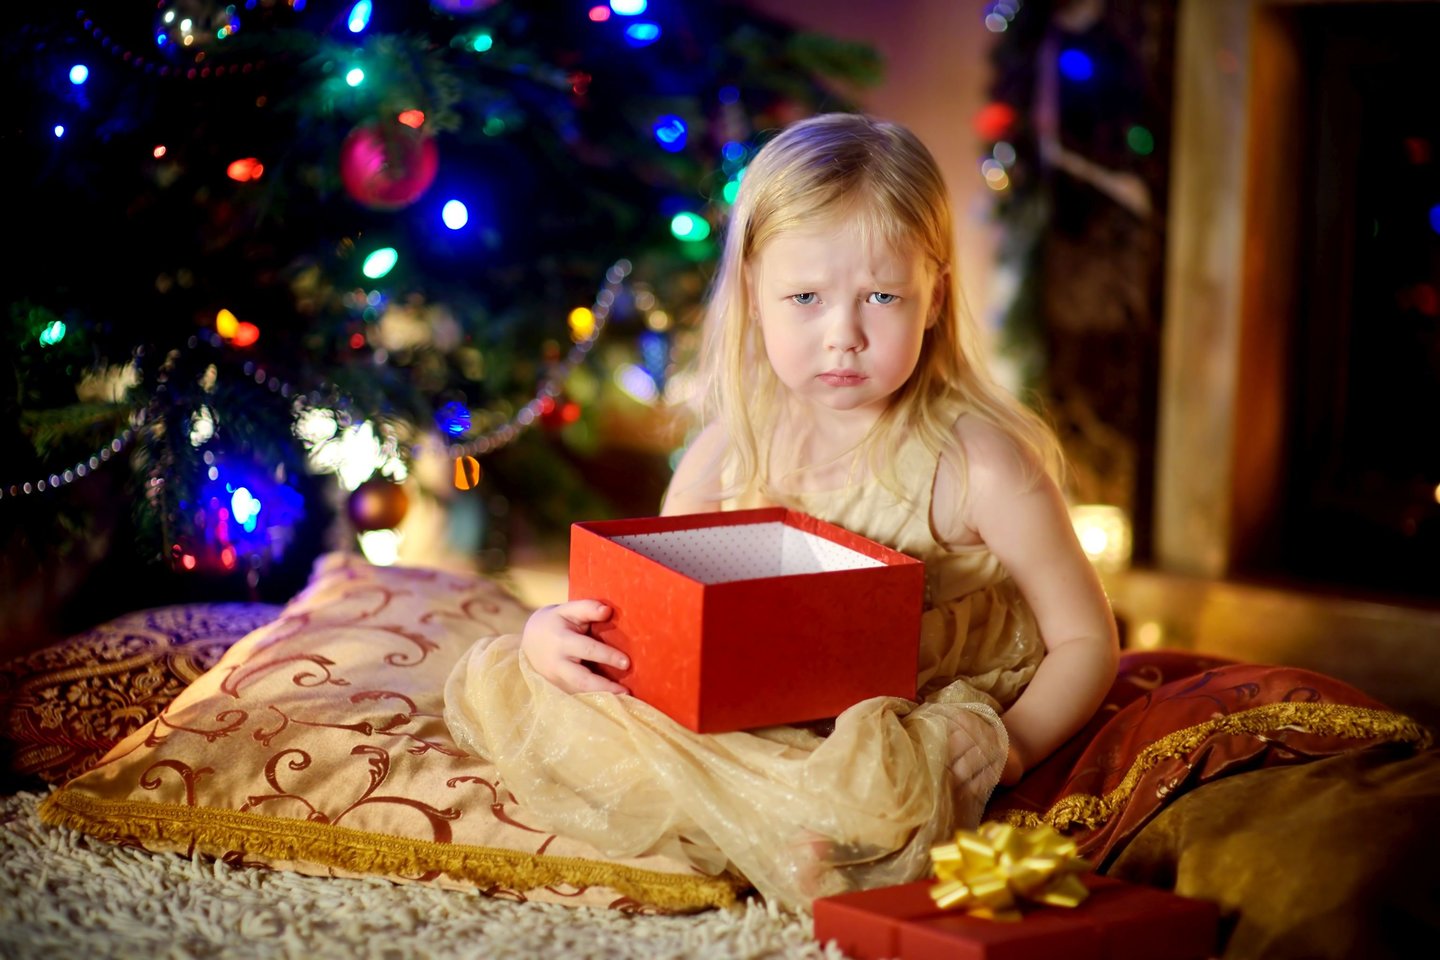   Psichologai žaislų karštinių nesmerkia, tačiau pataria, kas gali nutikti, jei jūsų atžalos po šventine eglute ras ne tai, ko prašė iš Kalėdų senelio.<br> 123rf nuotr. 